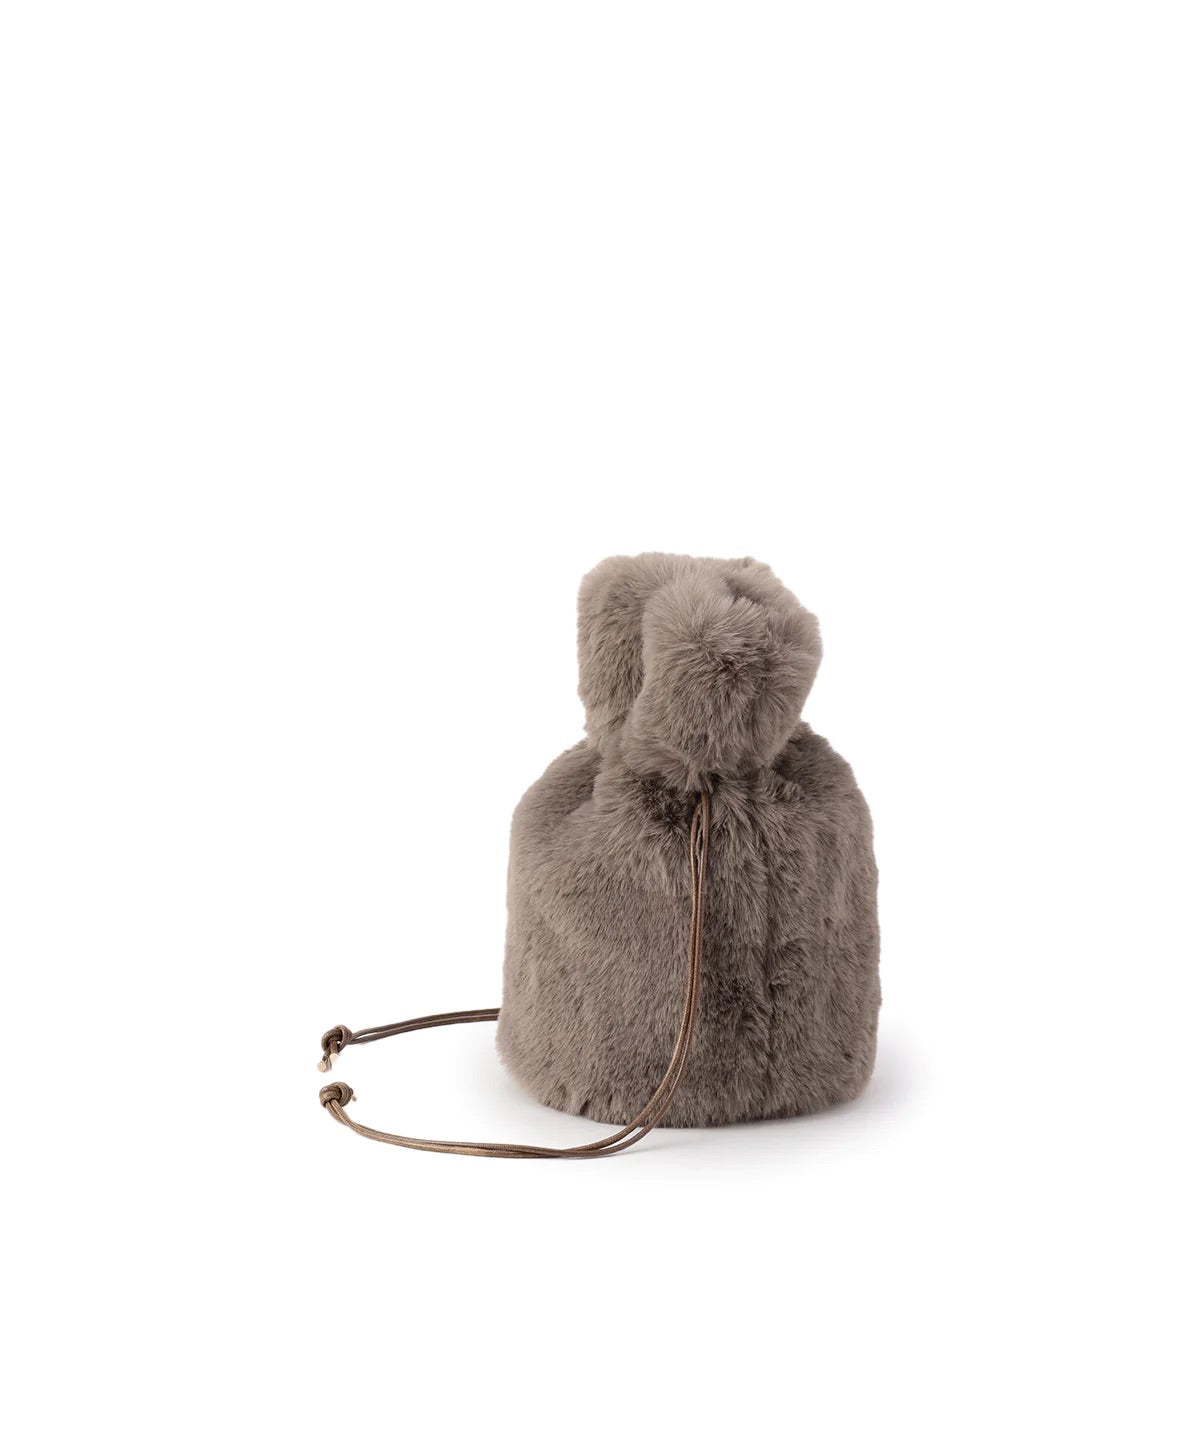 【期間限定ポーチS付き】Eco Fur Drawstring Bag (Small) GREIGE